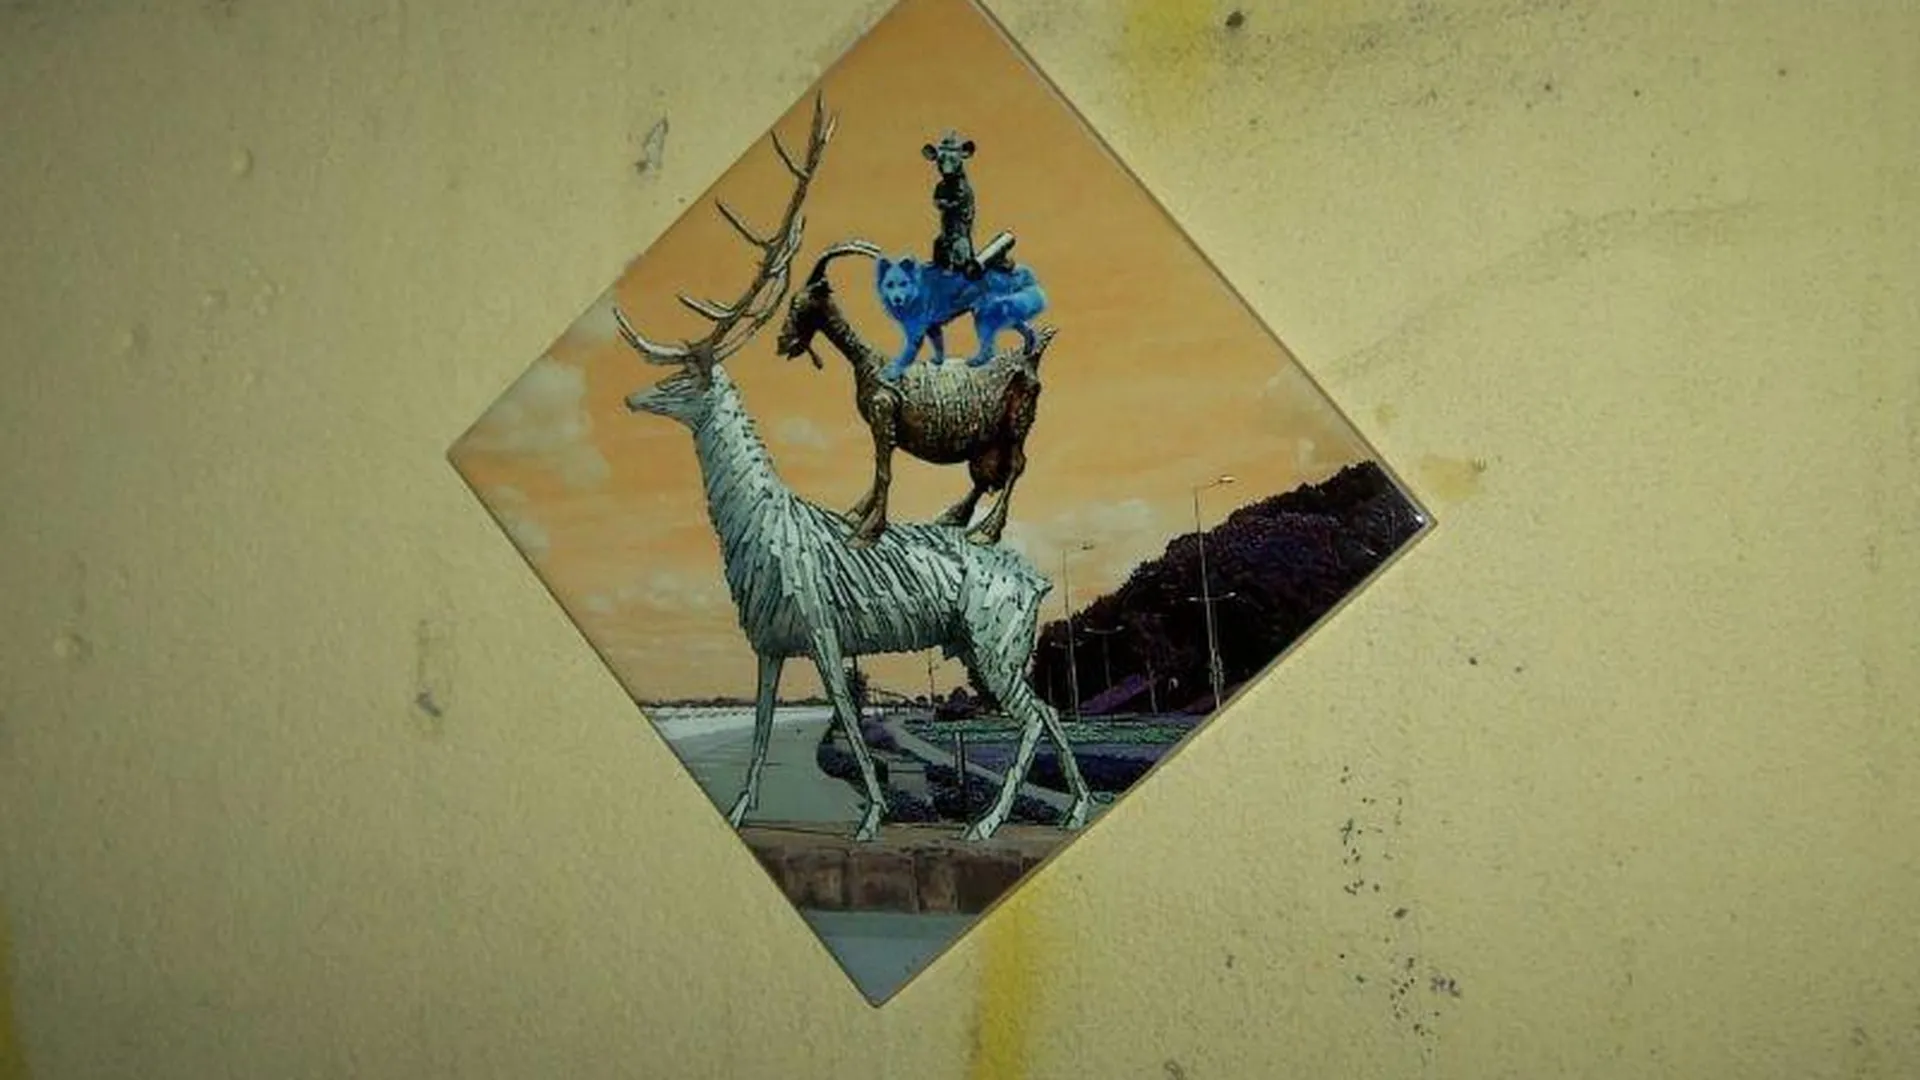 Бэнкси Нижегородский предложил альтернативный герб города с известными скульптурами